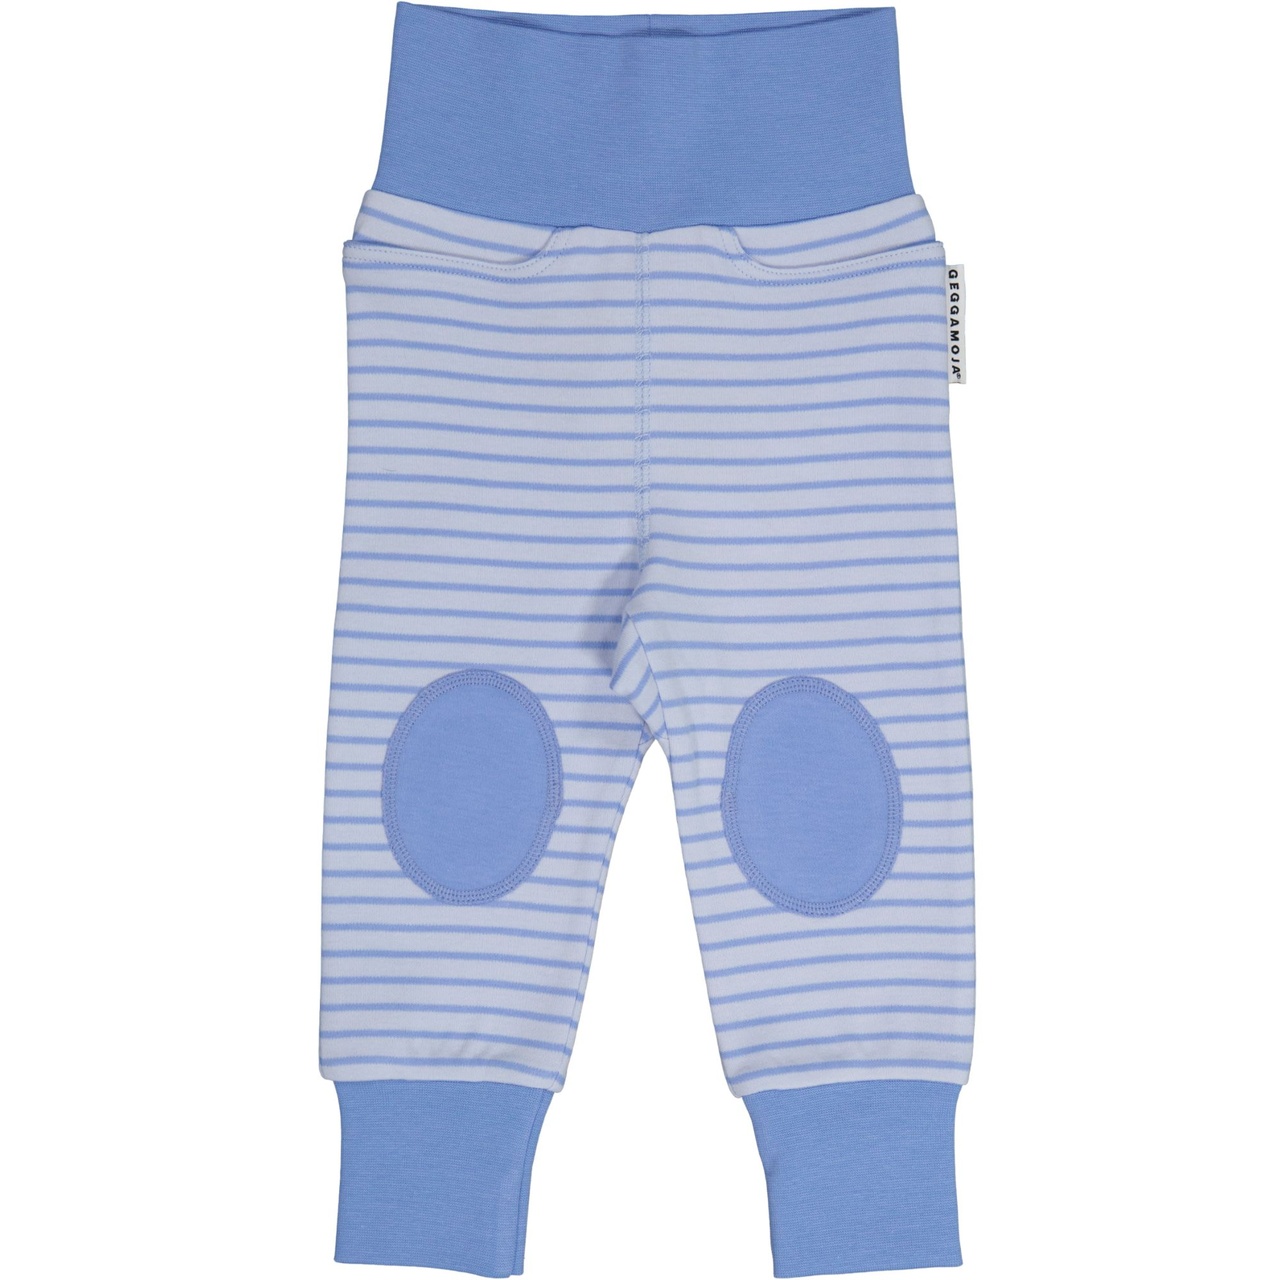 Vauvan housut Light Sininen/Sininen